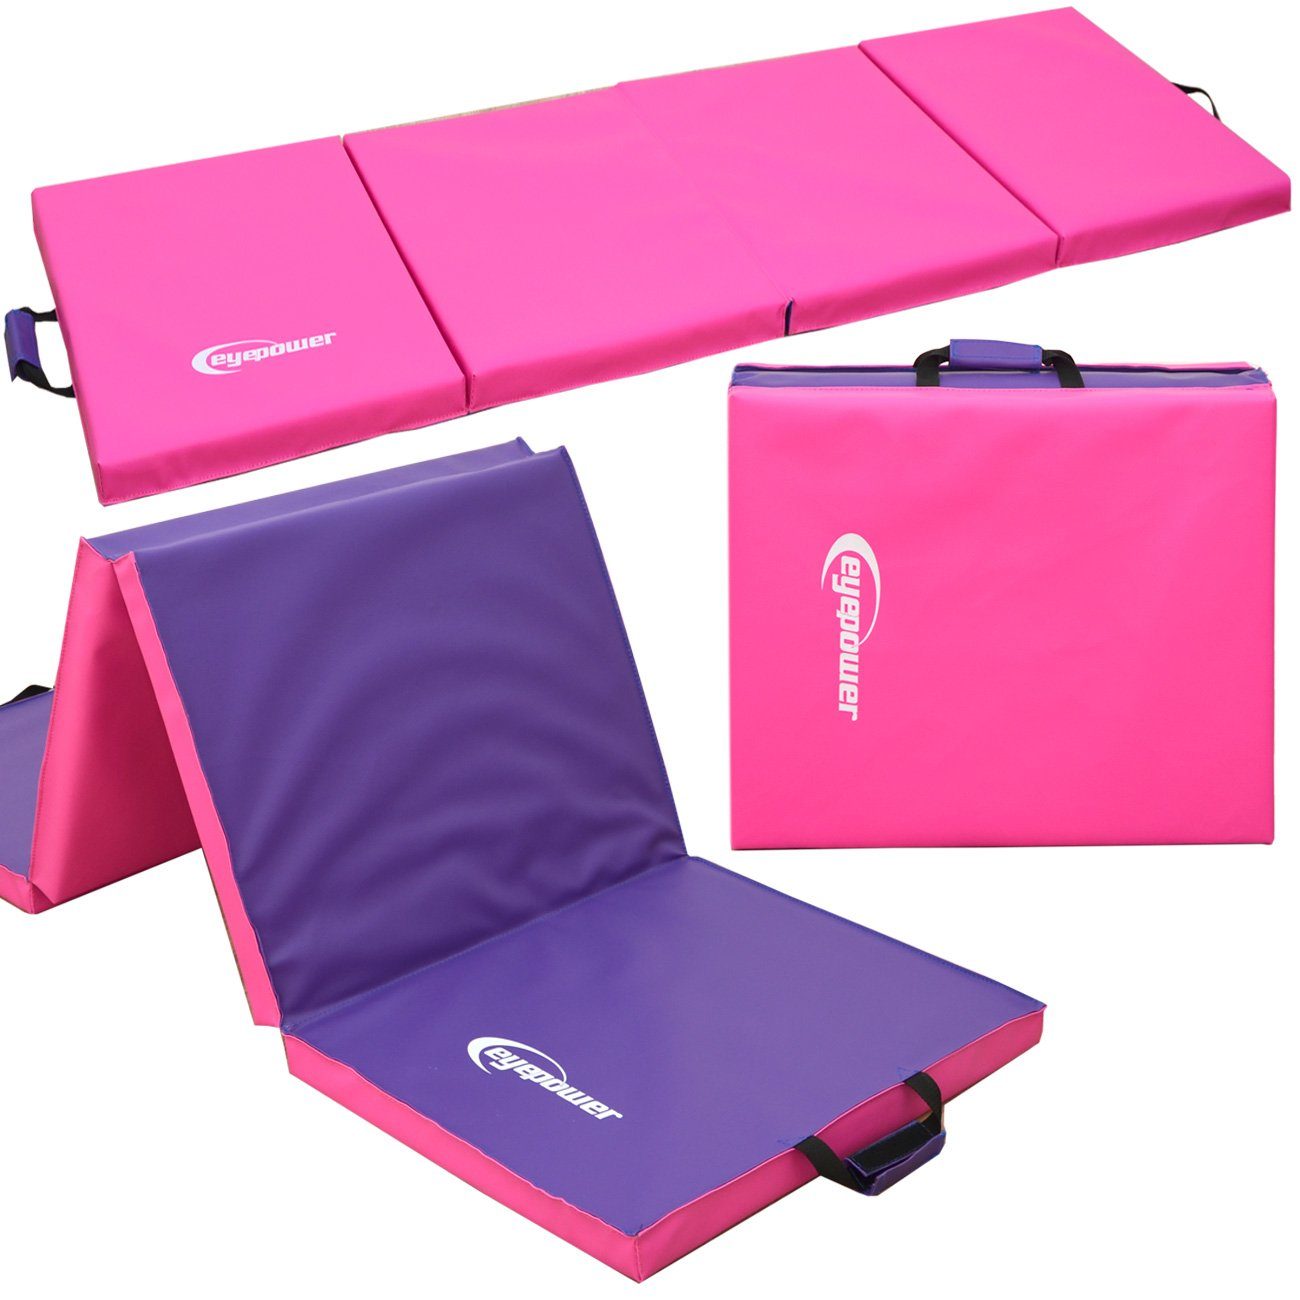 eyepower Fitnessmatte XL Gymnastikmatte Sport-, Turn- und Bodenmatte, Weichbodenmatte pink